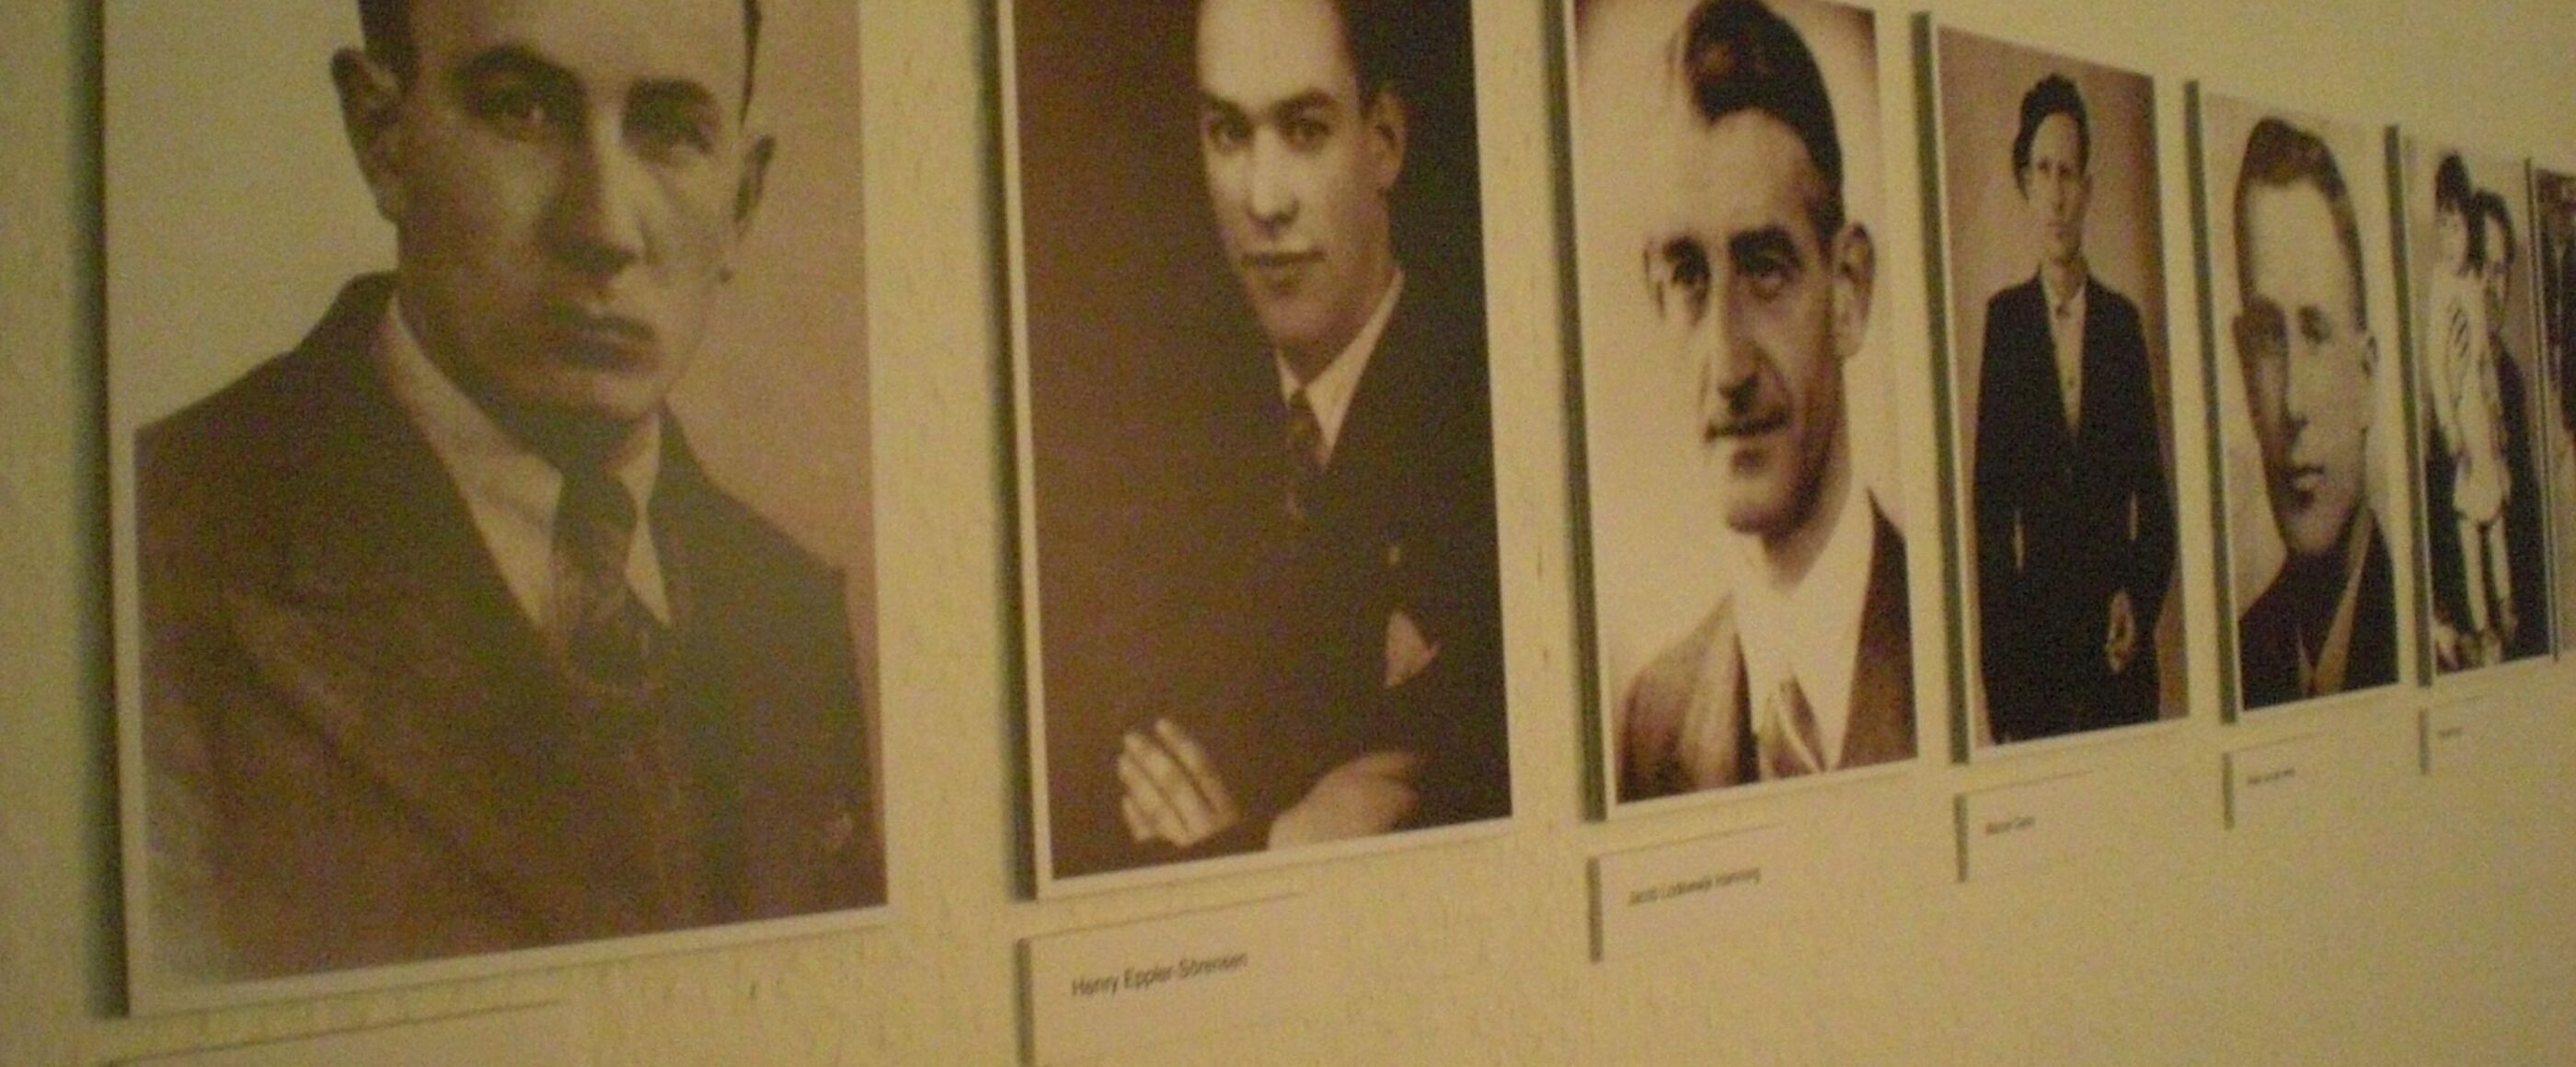 Mehrere schwarz-weiß Bilder von jungen Männern hängen an einer Wand.